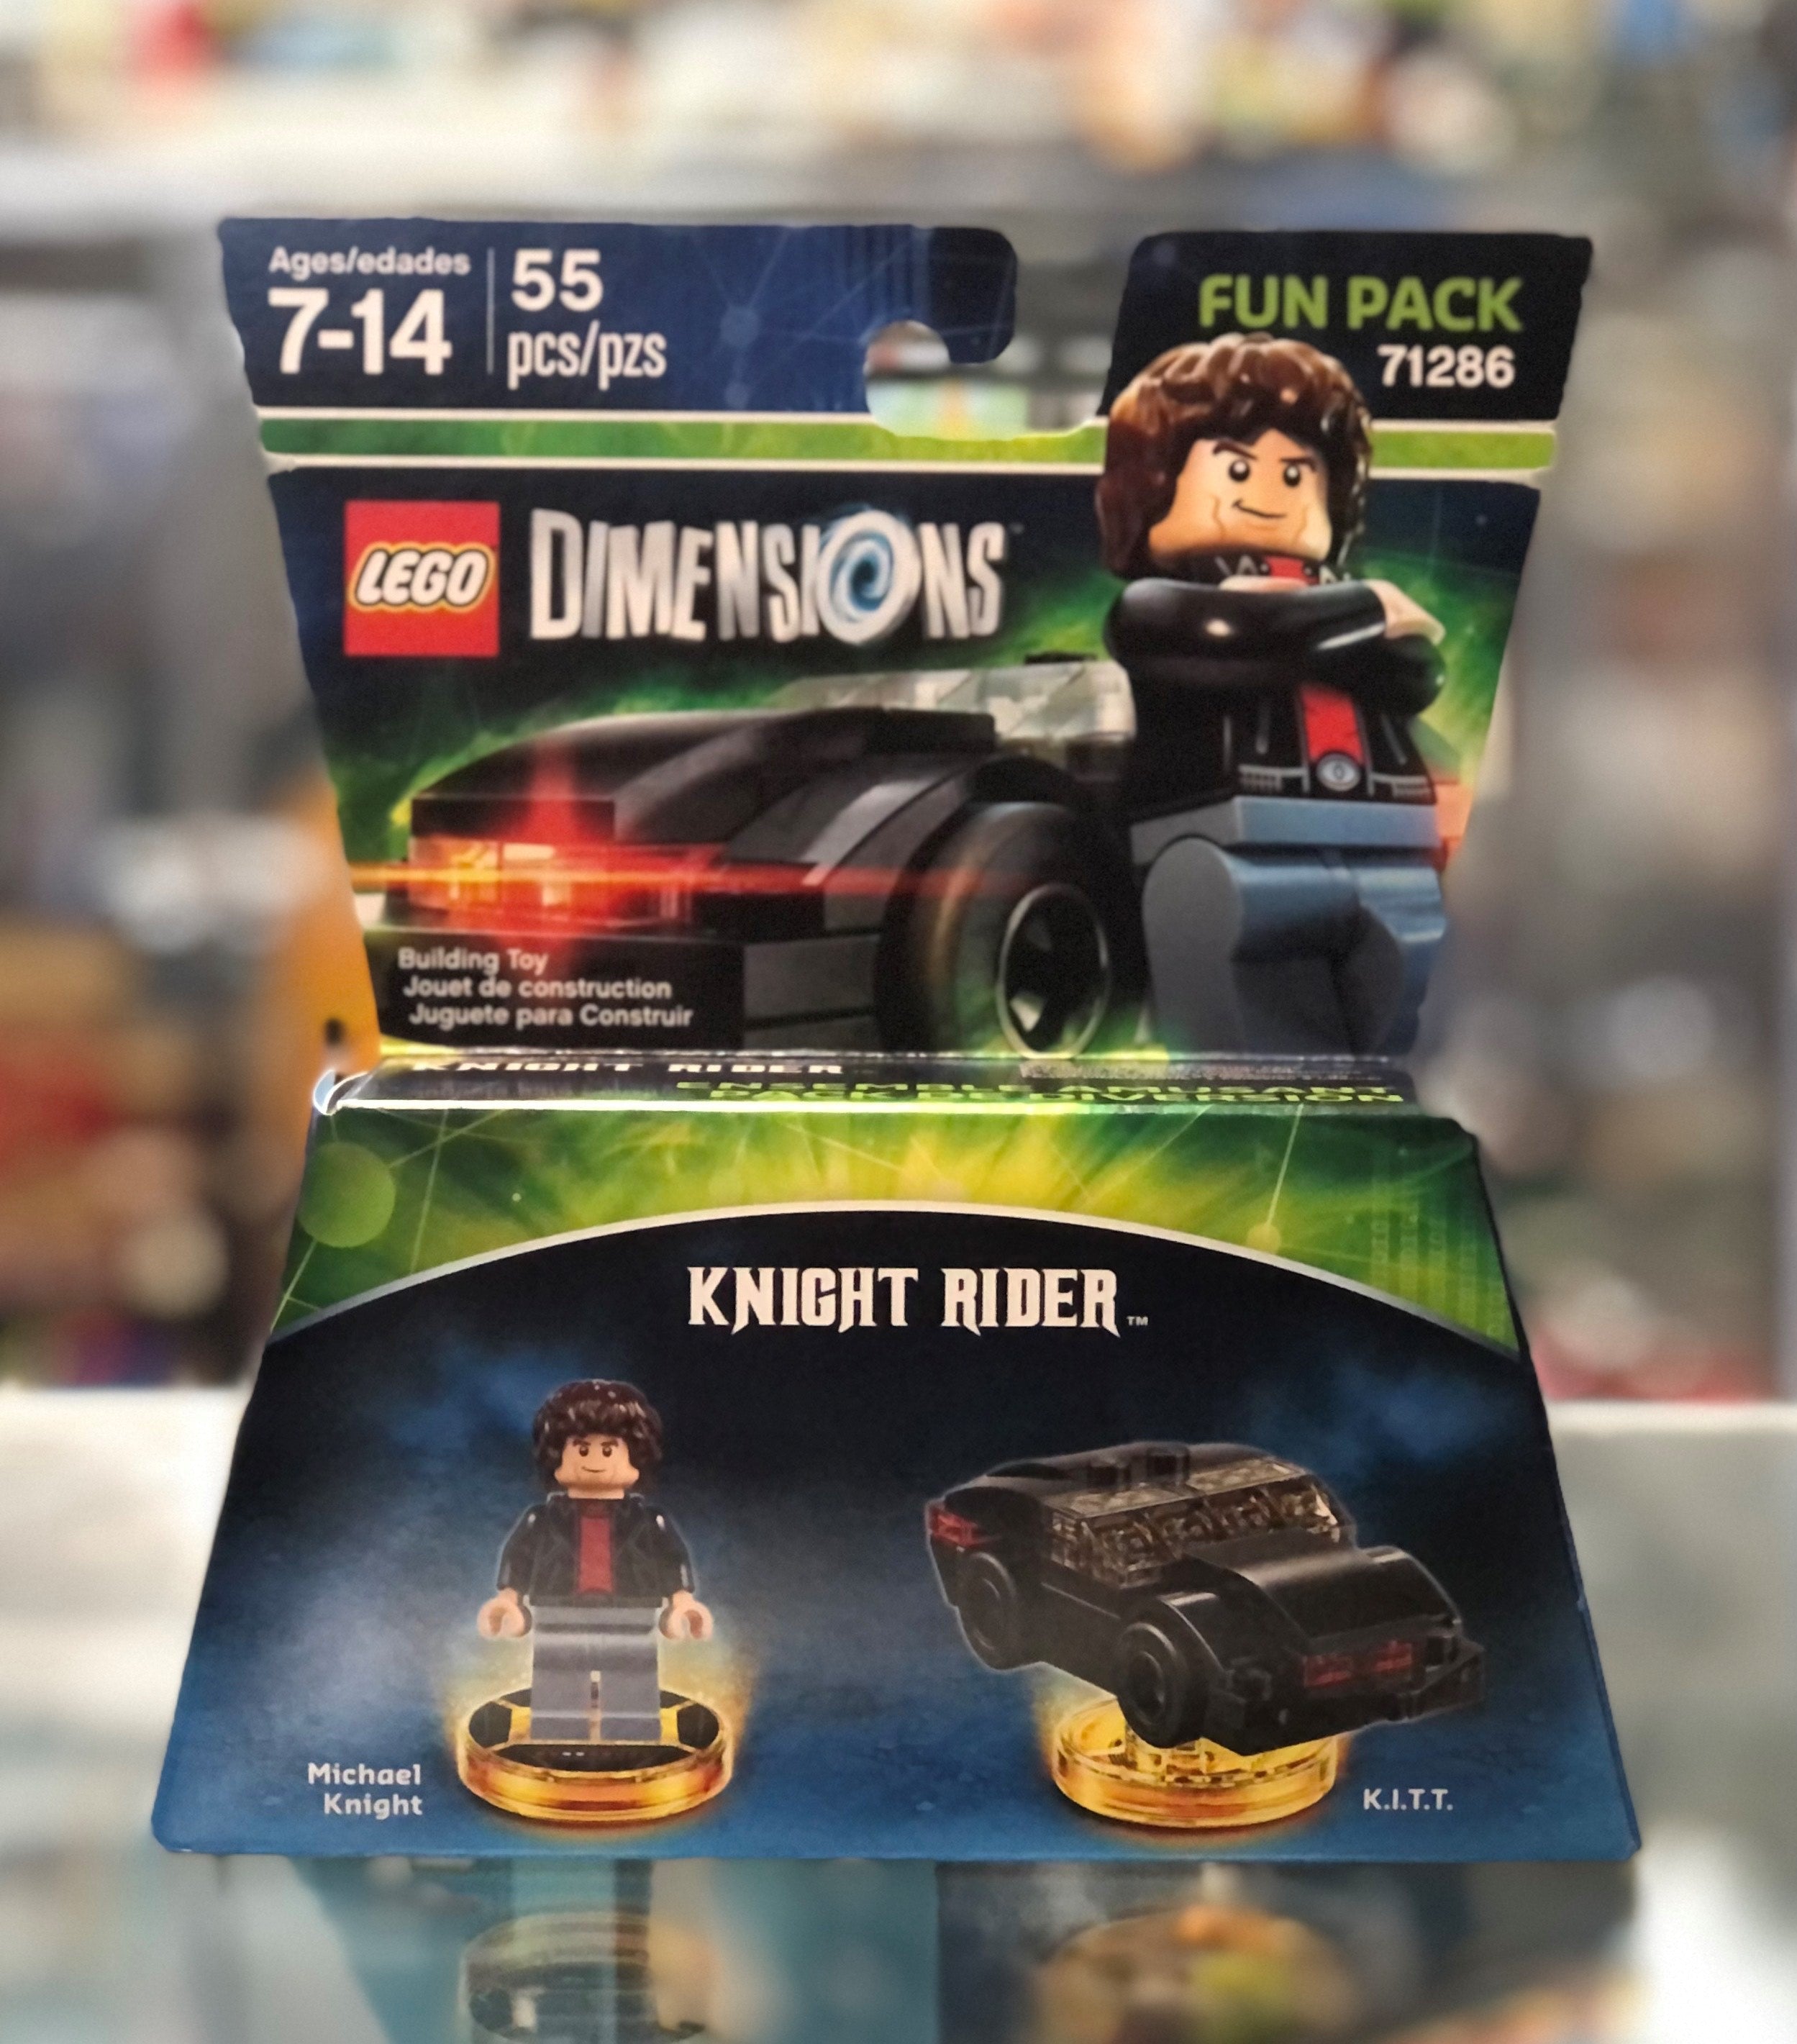 Fun Pack - Knight Rider Knight and K.I.T.T.), 71286 – Atlanta Brick Co